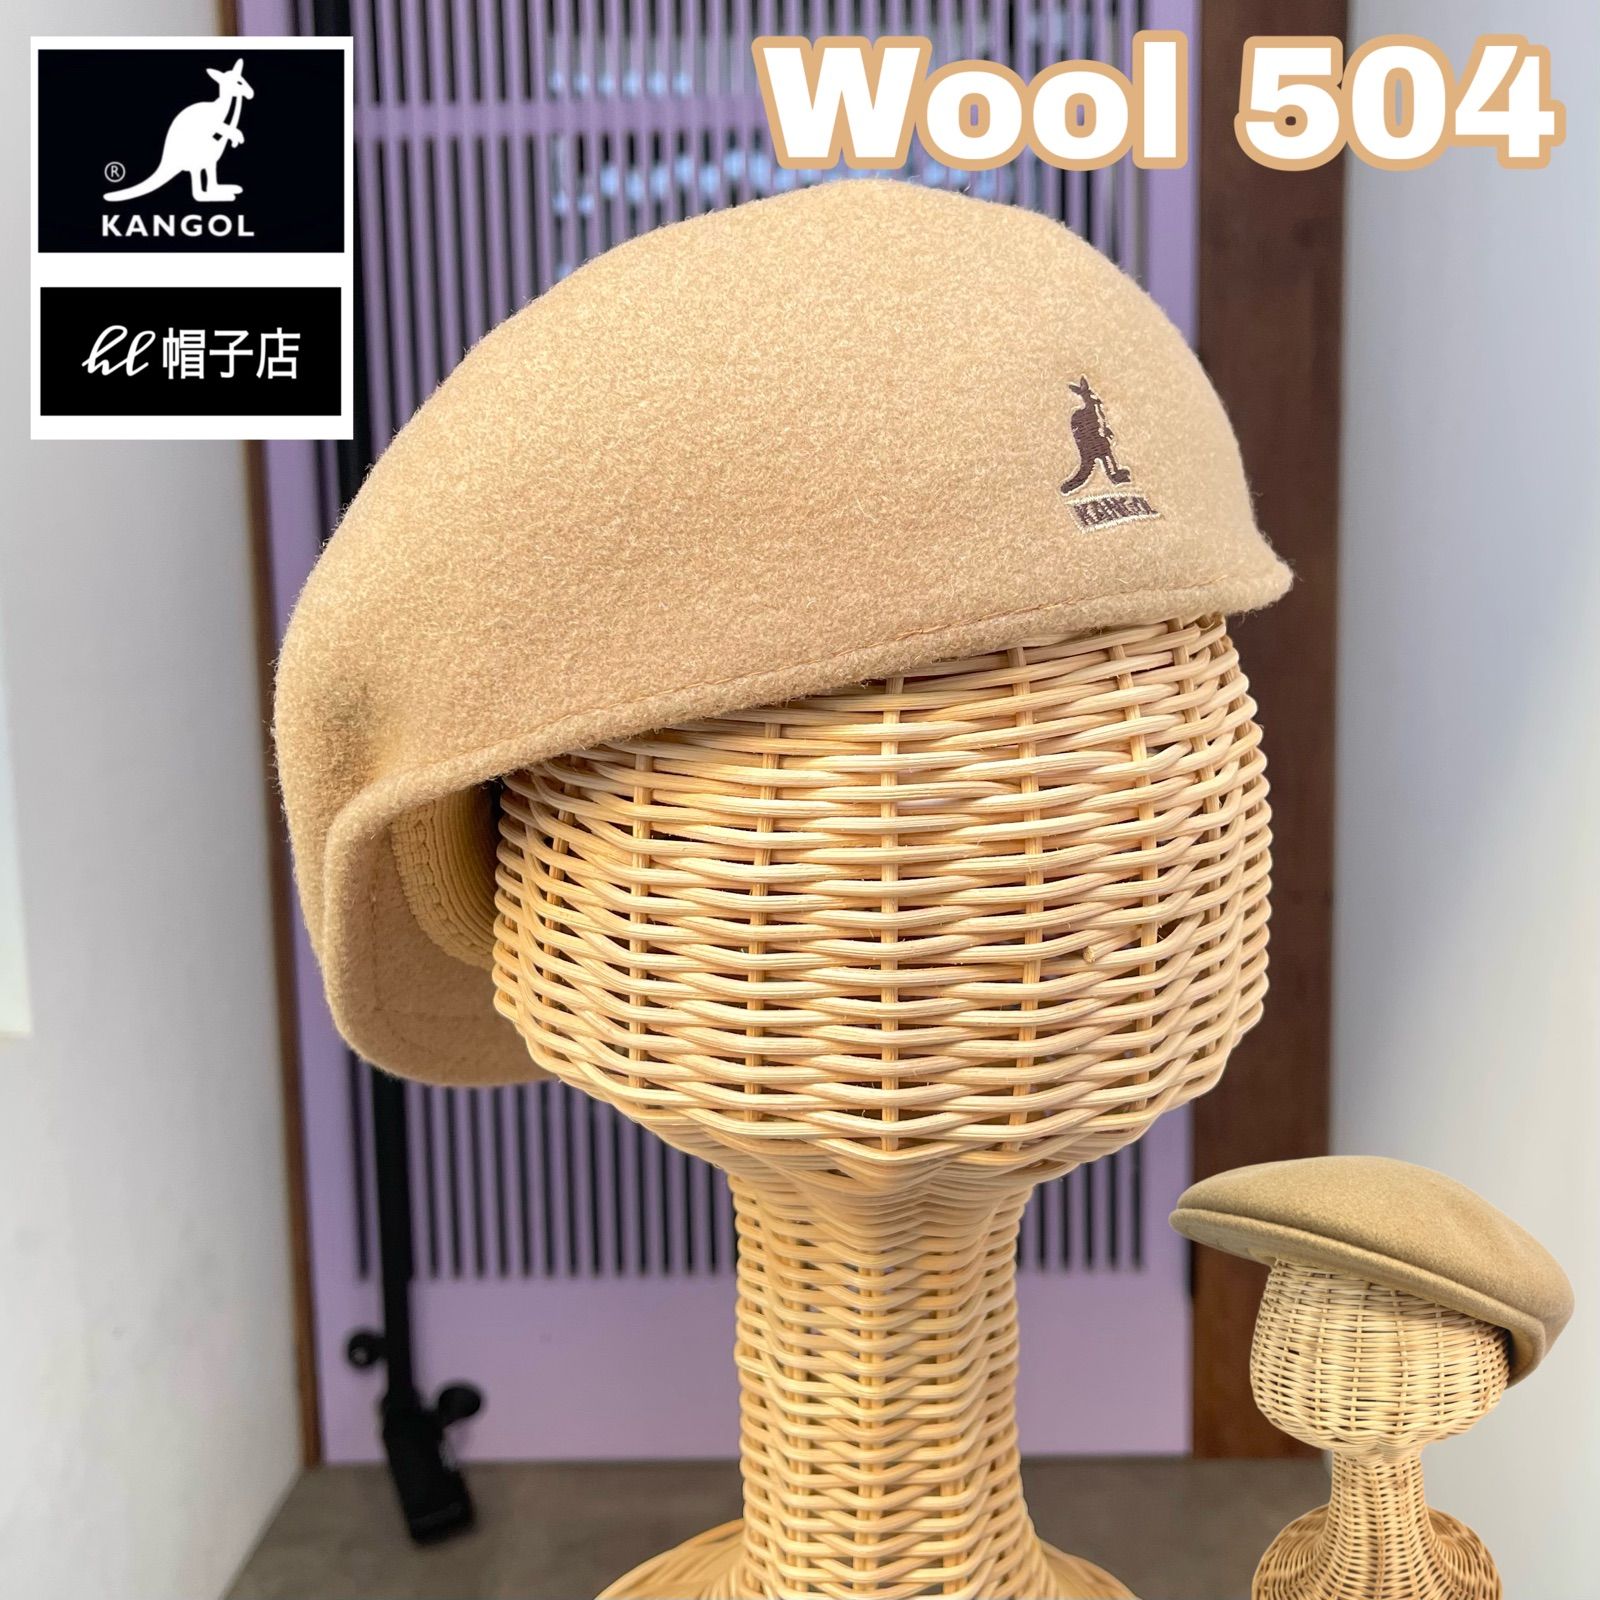 KANGOL ハンチング  帽子 wool 504 キャメル